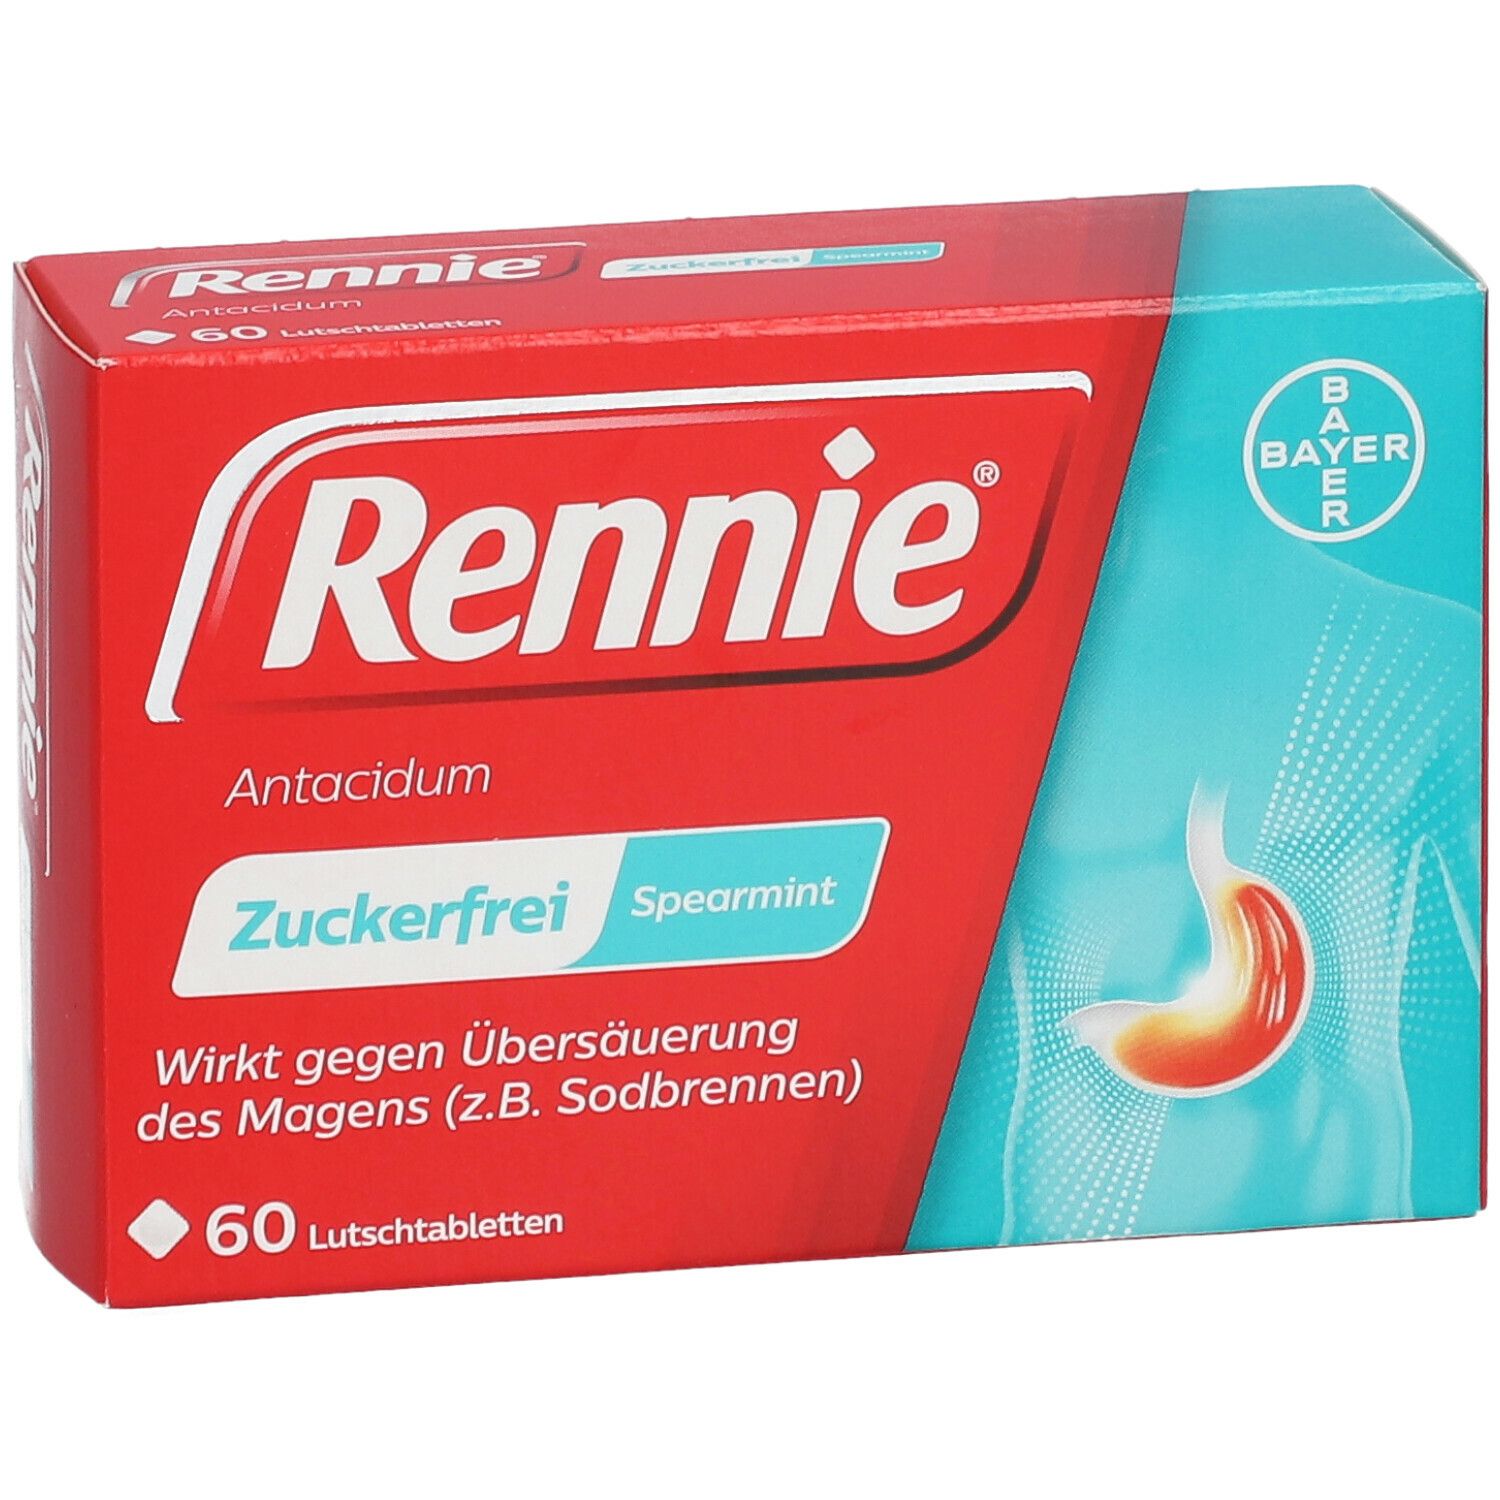 Rennie® Antacidum Spearmint Zuckerfrei